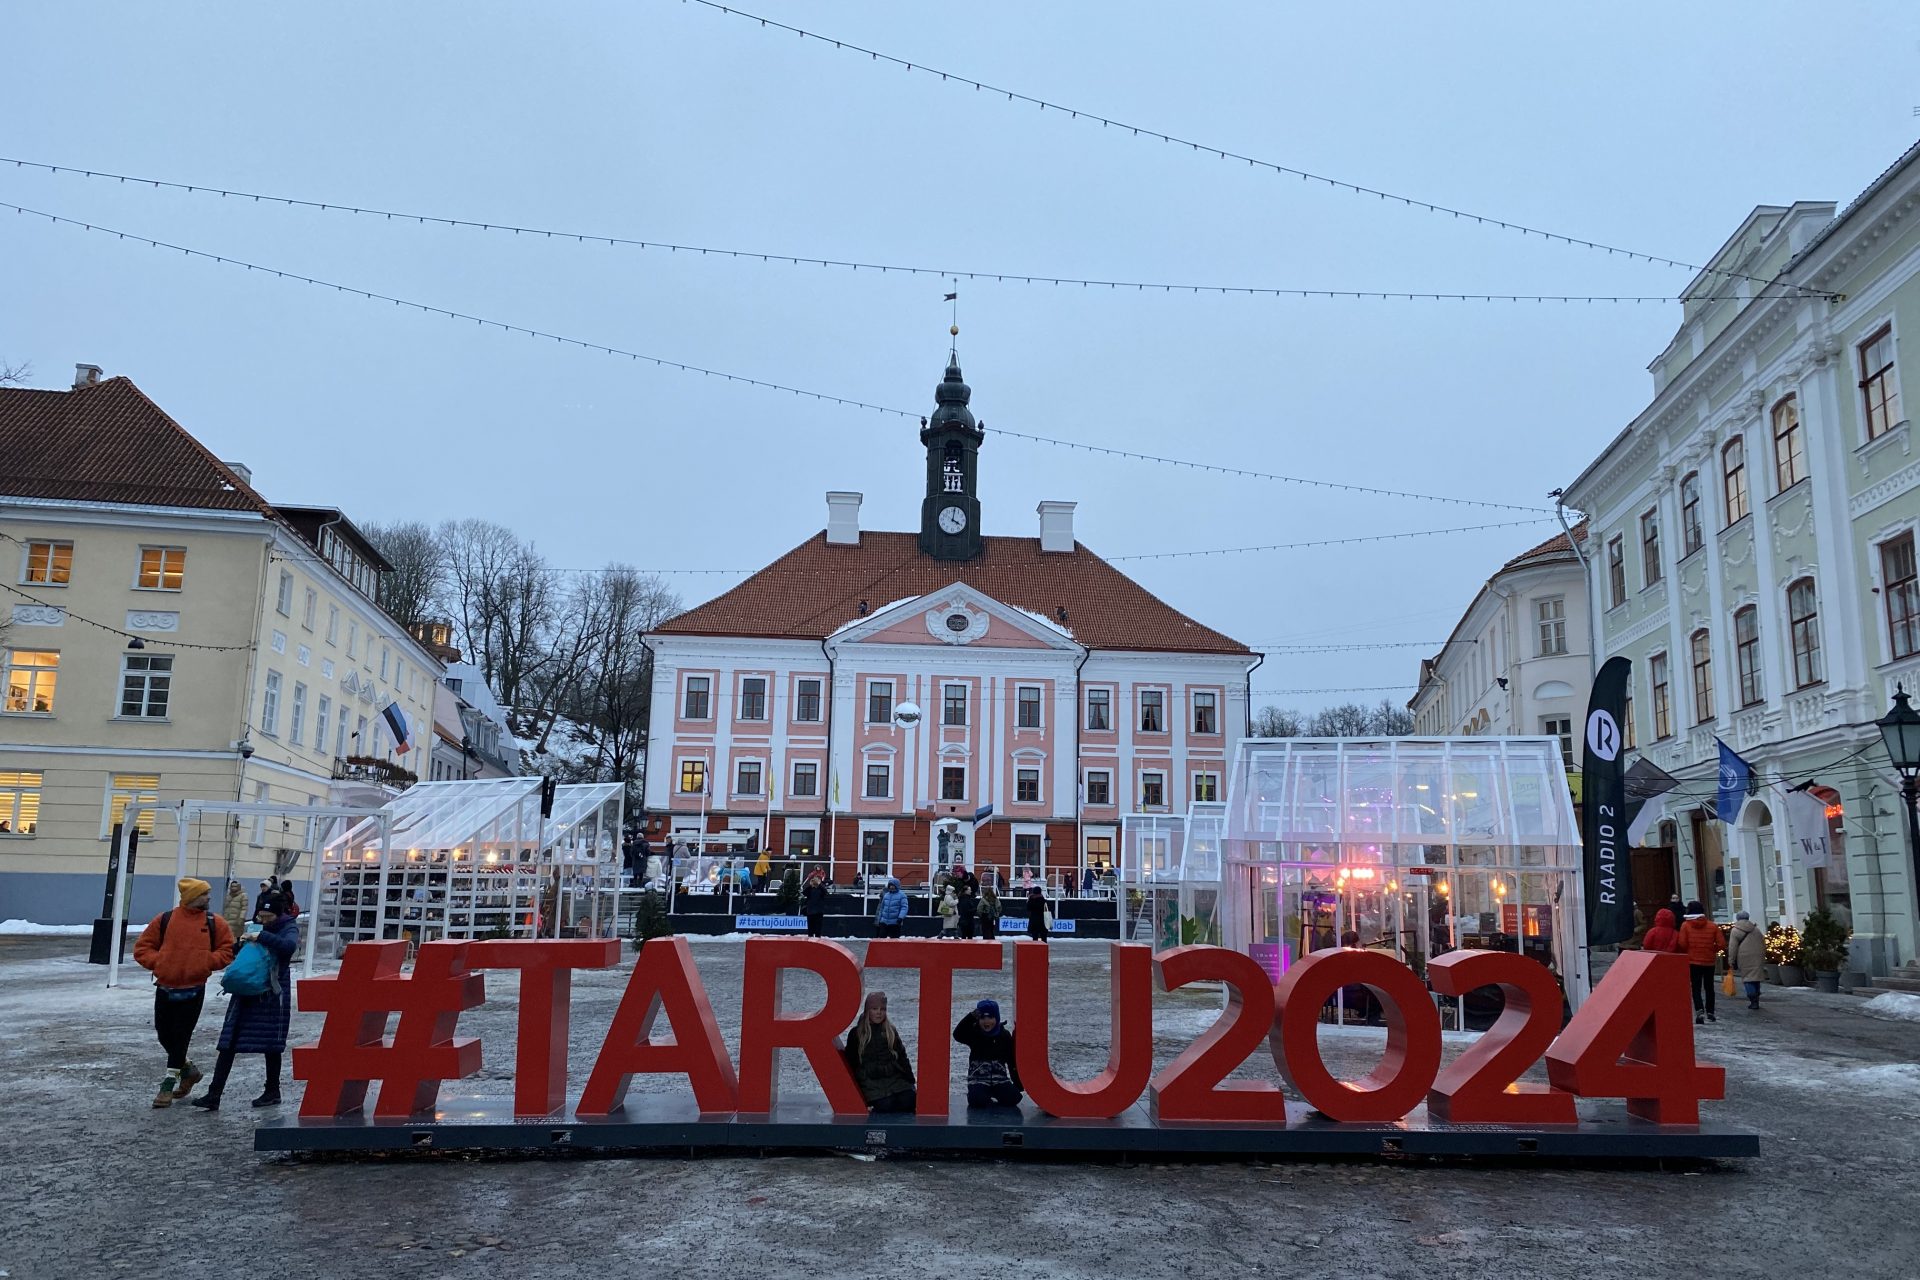 Tartu (Estonia)